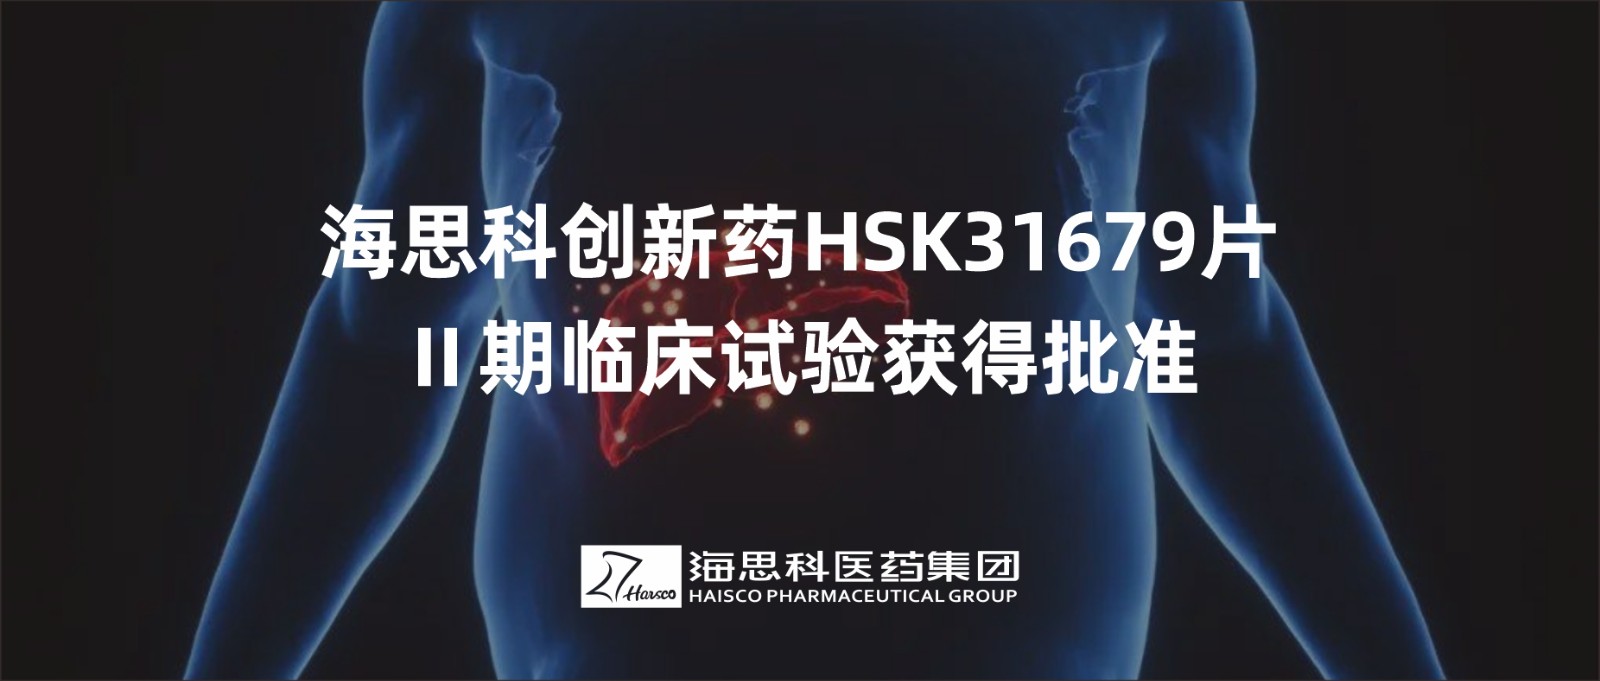 乐鱼游戏app正规版创新药HSK31679片Ⅱ期临床试验获得批准